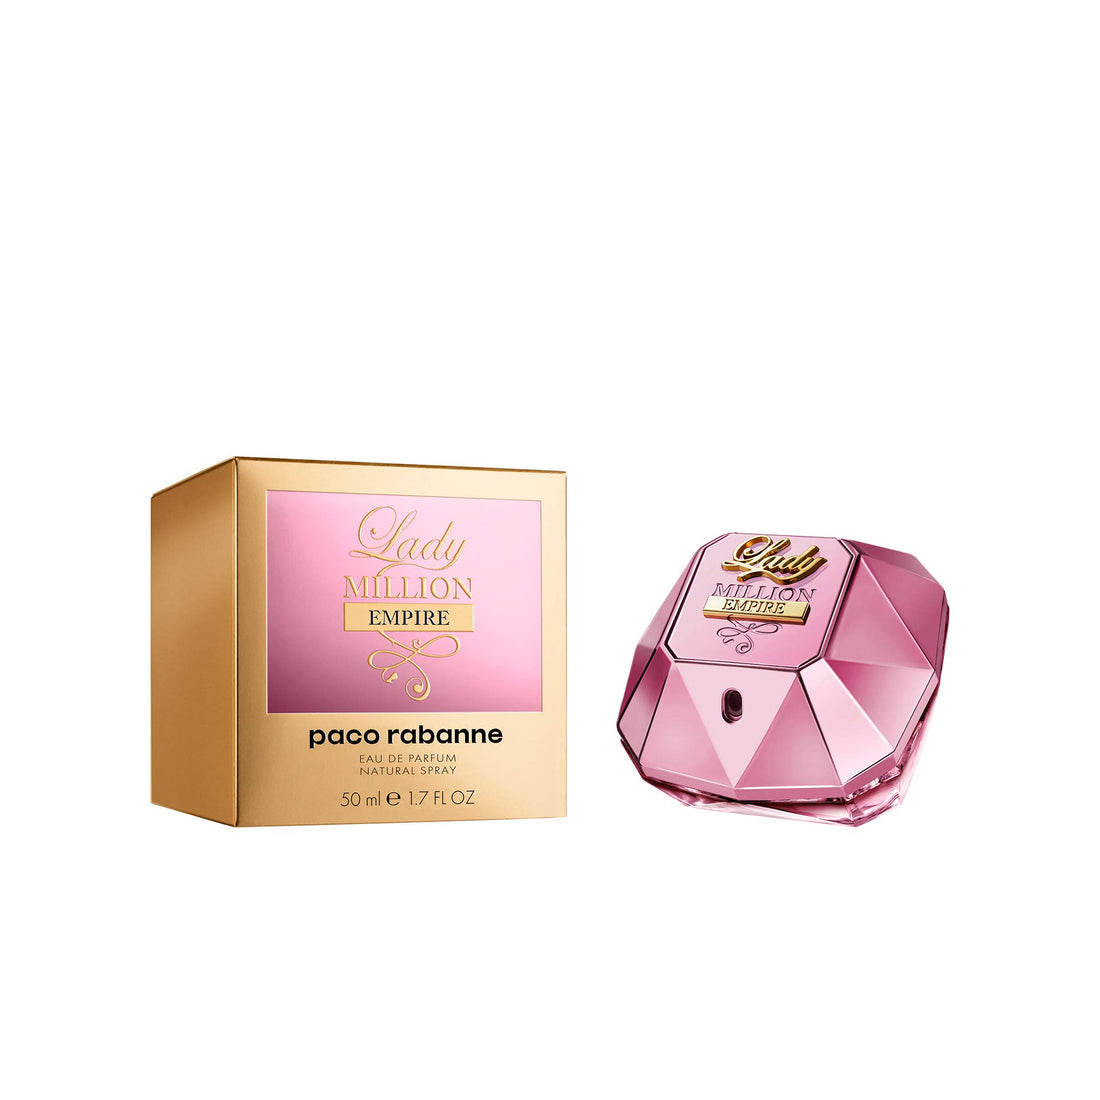 Paco Rabanne - Lady Million Empire Eau de Parfum Vaporizador 50 ml